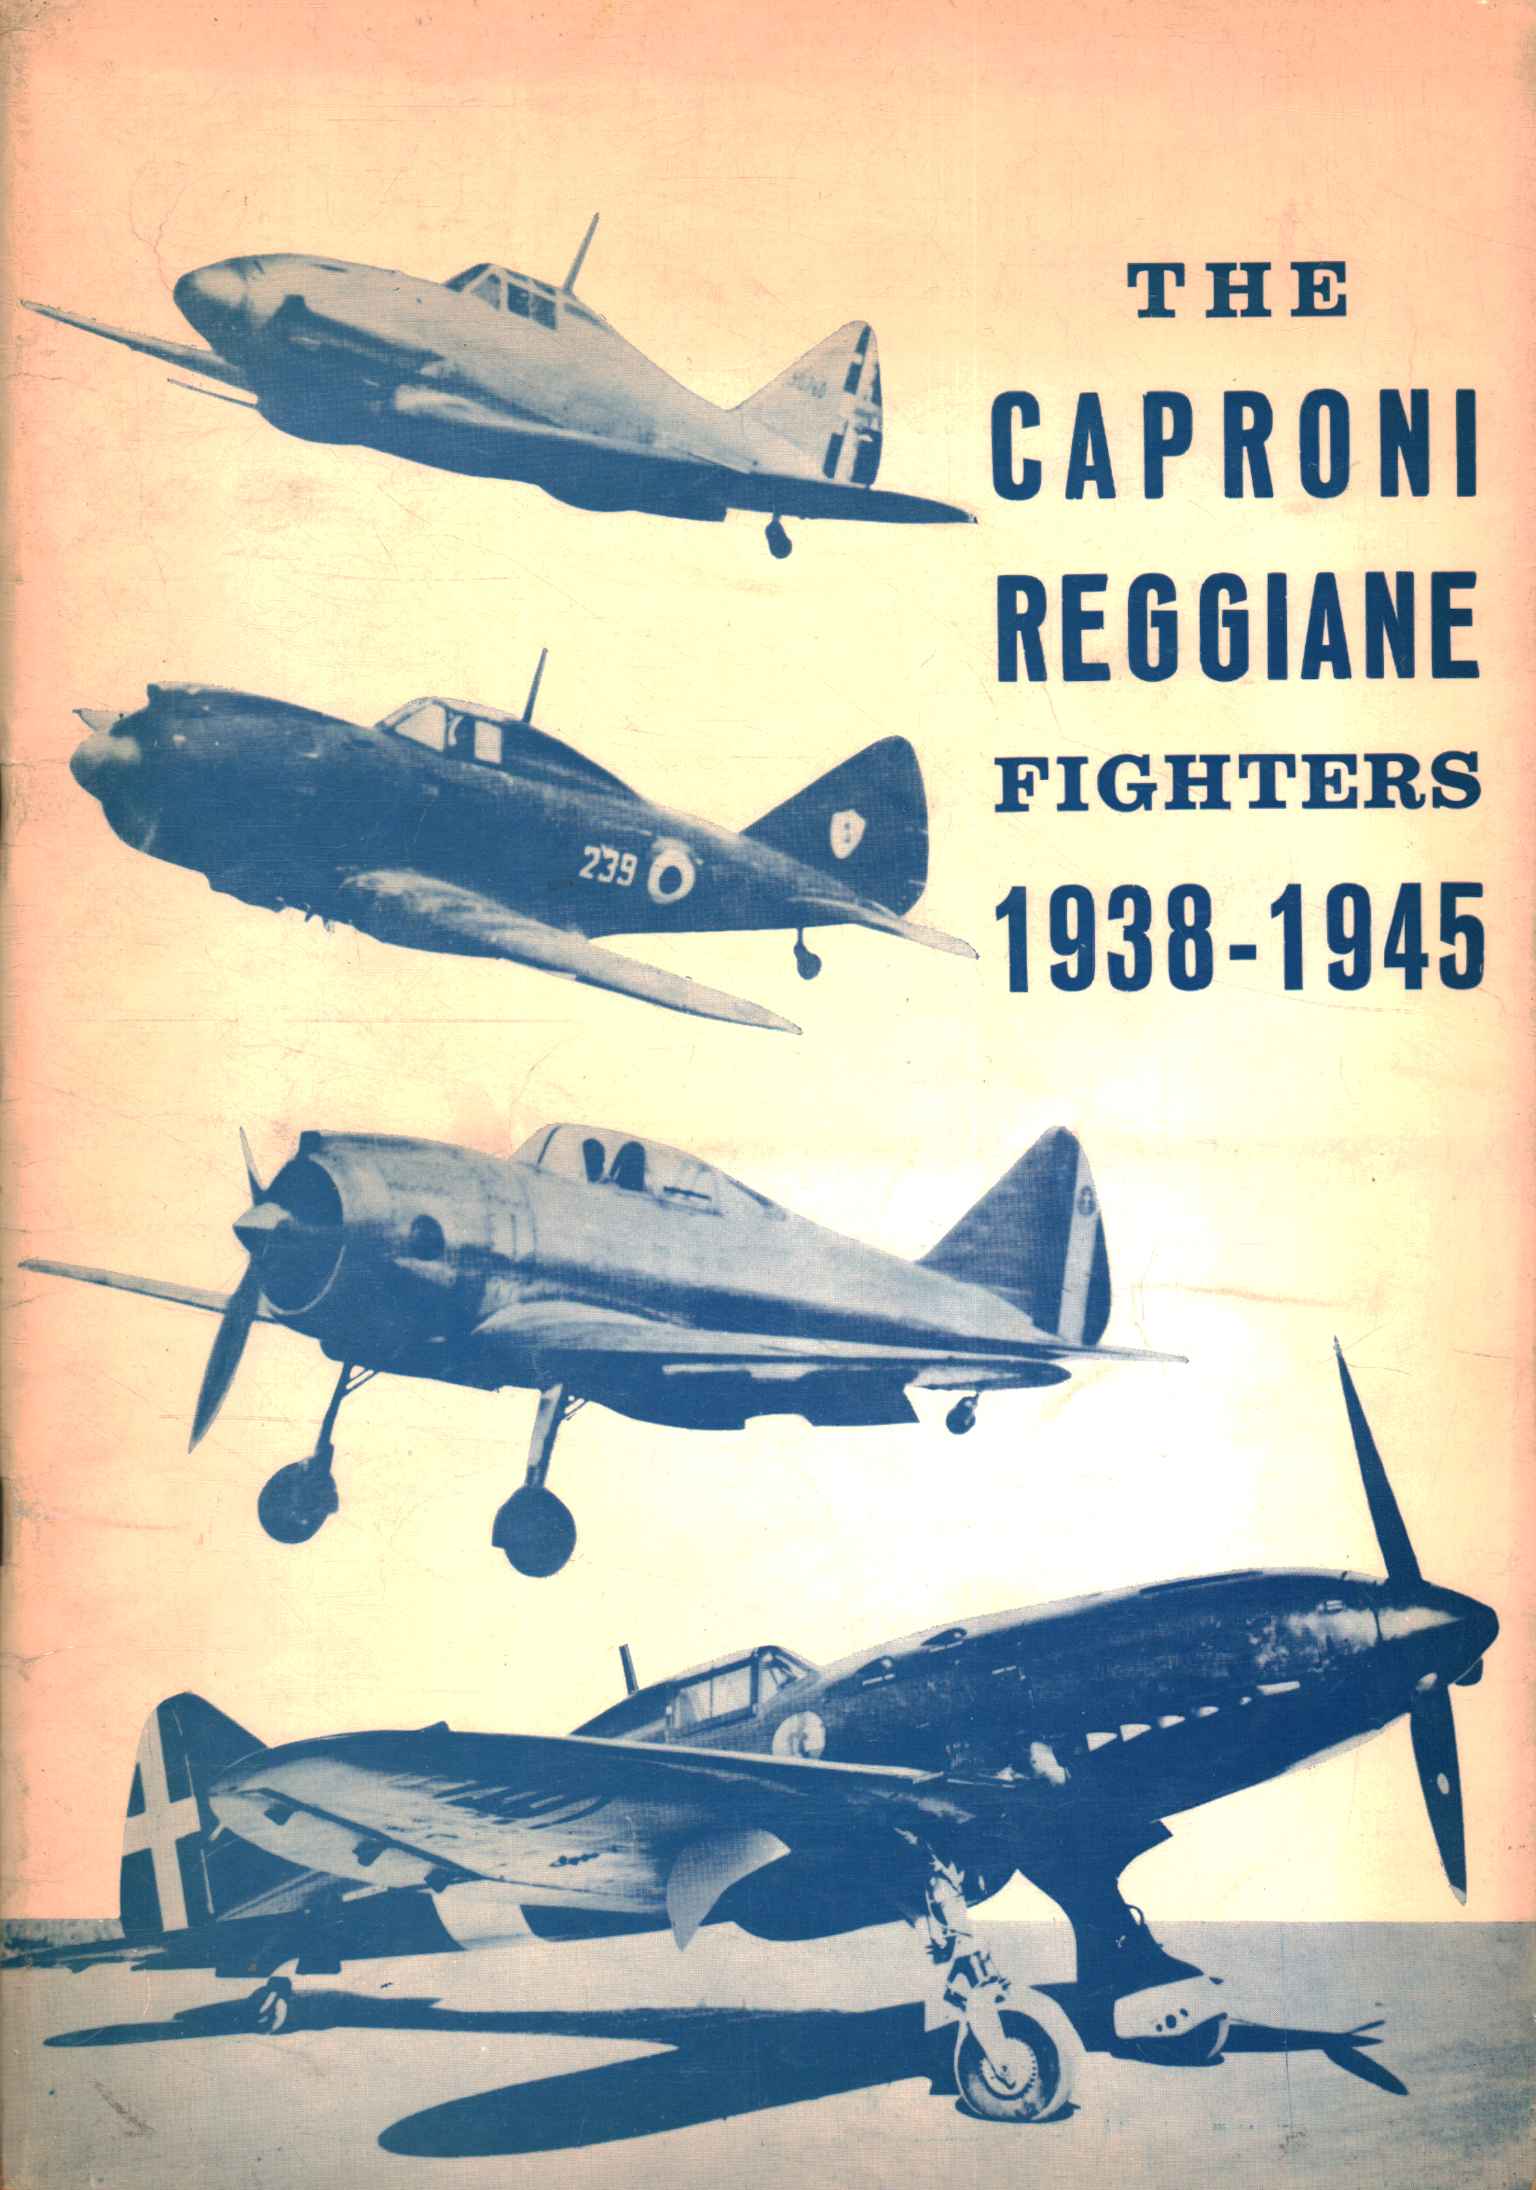 The Caproni-Reggiane Fighters - I caccia,The Caproni Reggiane Fighters / I cacc